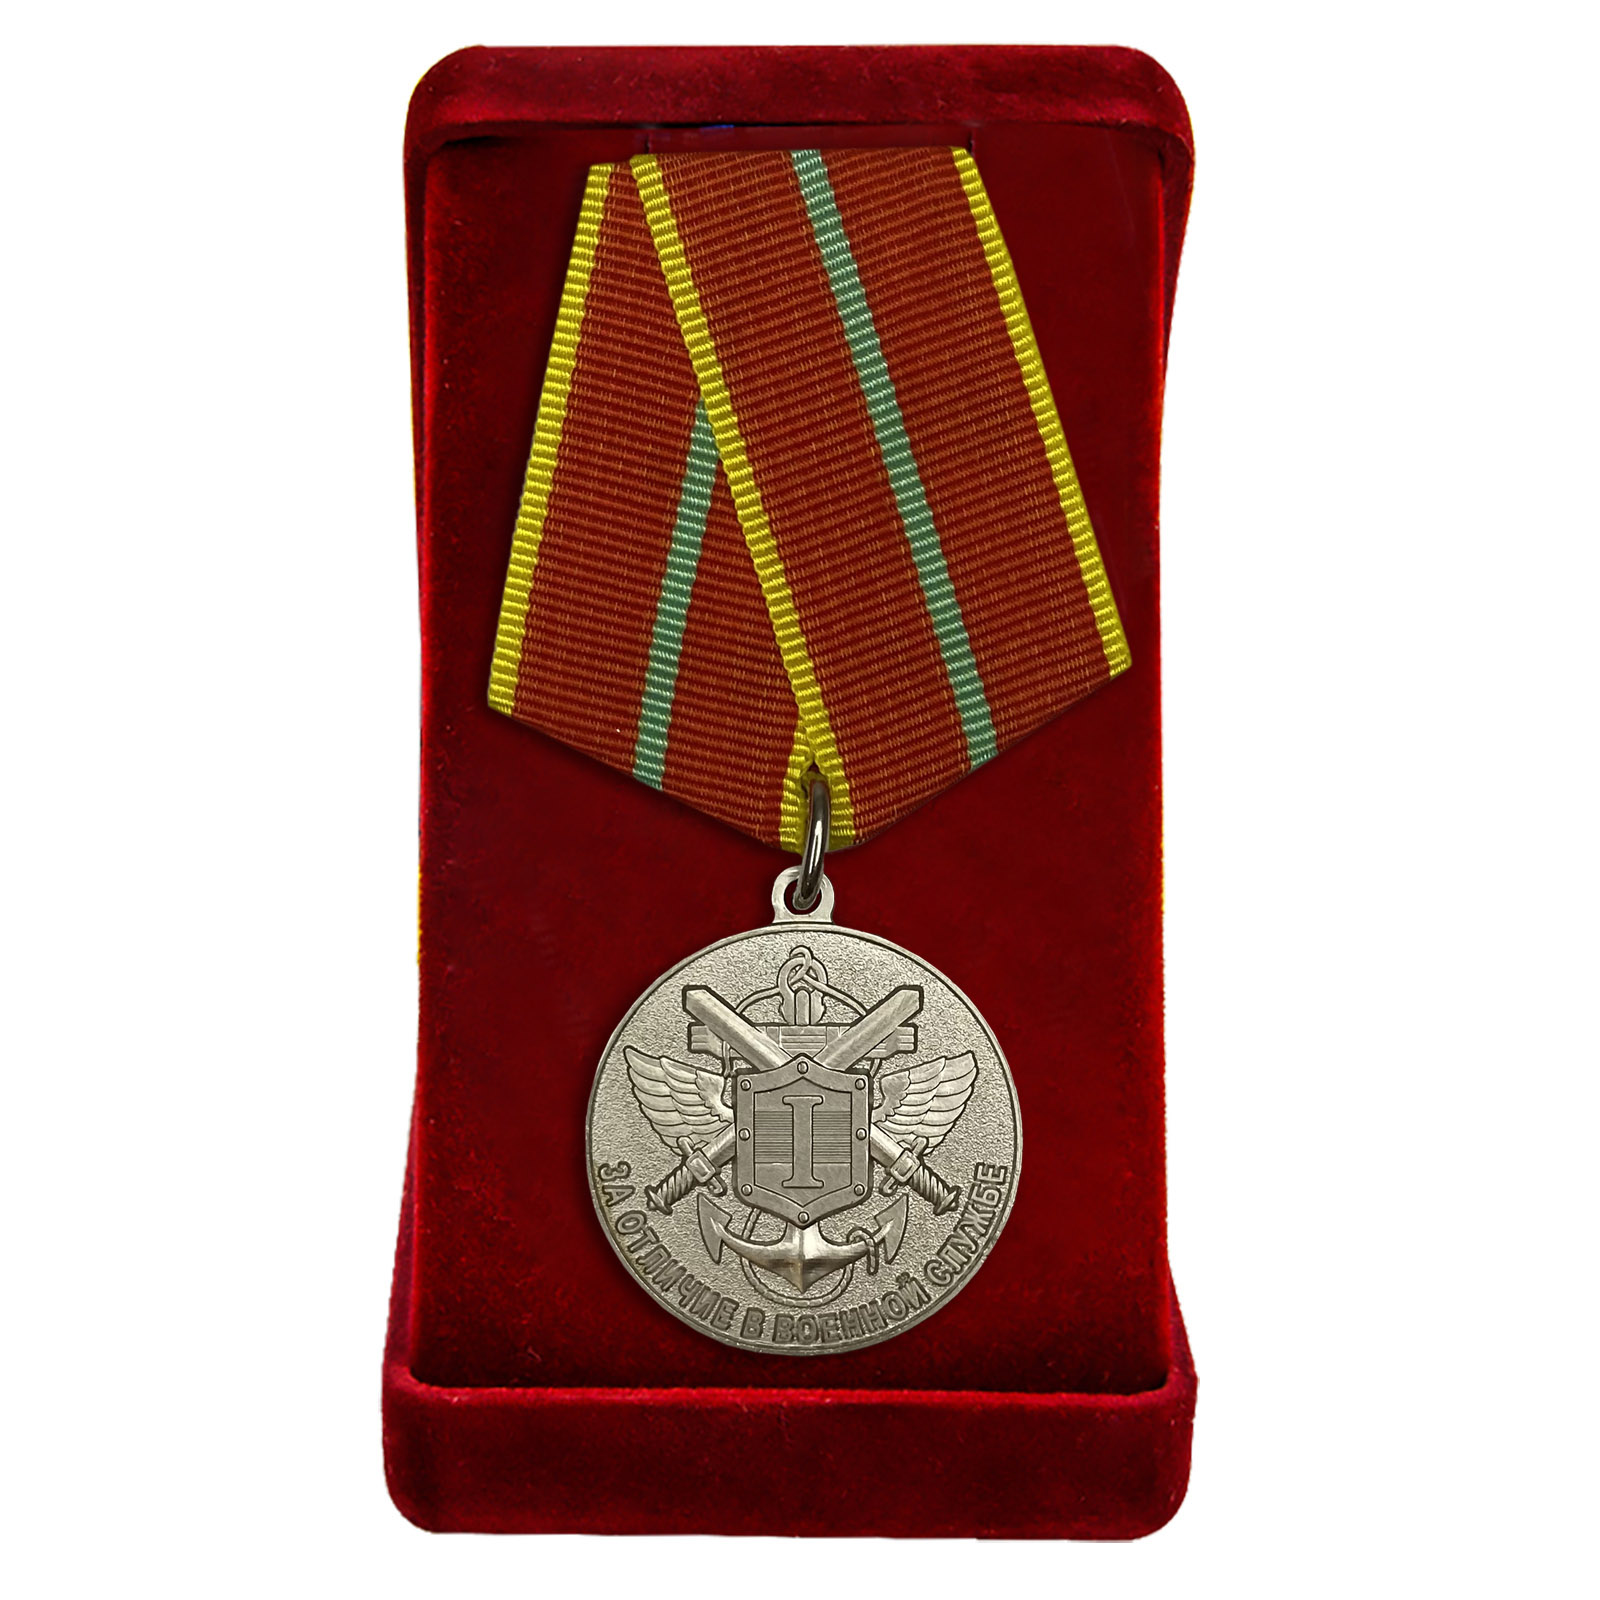 Купить медаль МЧС РФ "За отличие в военной службе" 1 степени в подарок